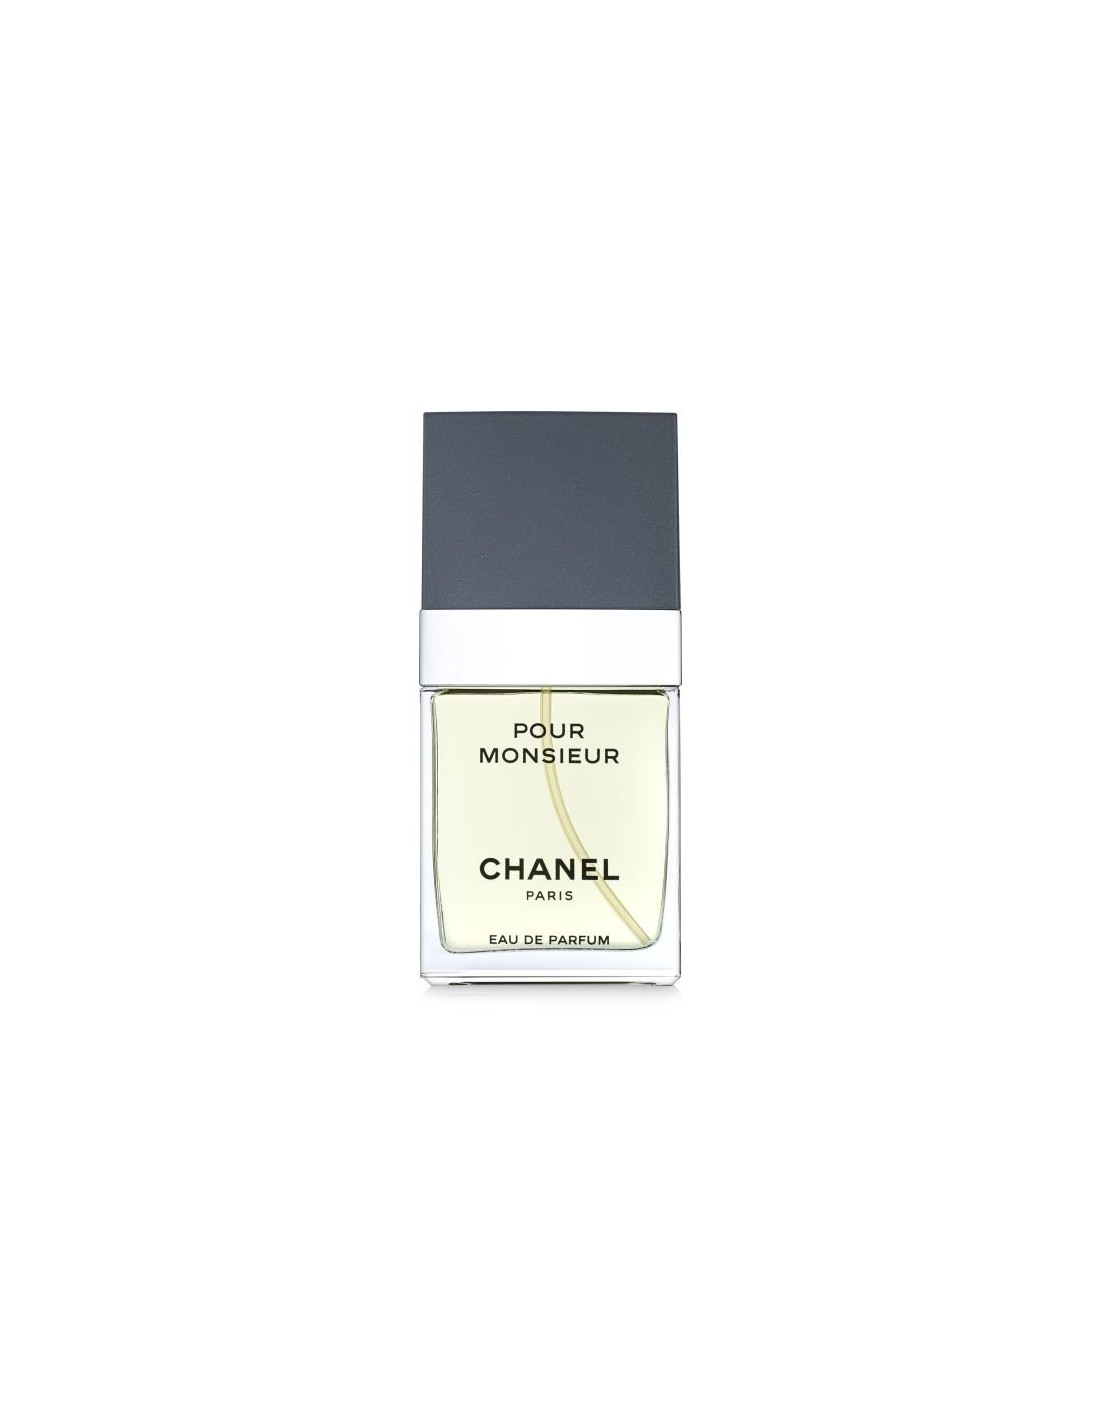 Chanel Monsieur 1.7 oz EDT Spray for Men 